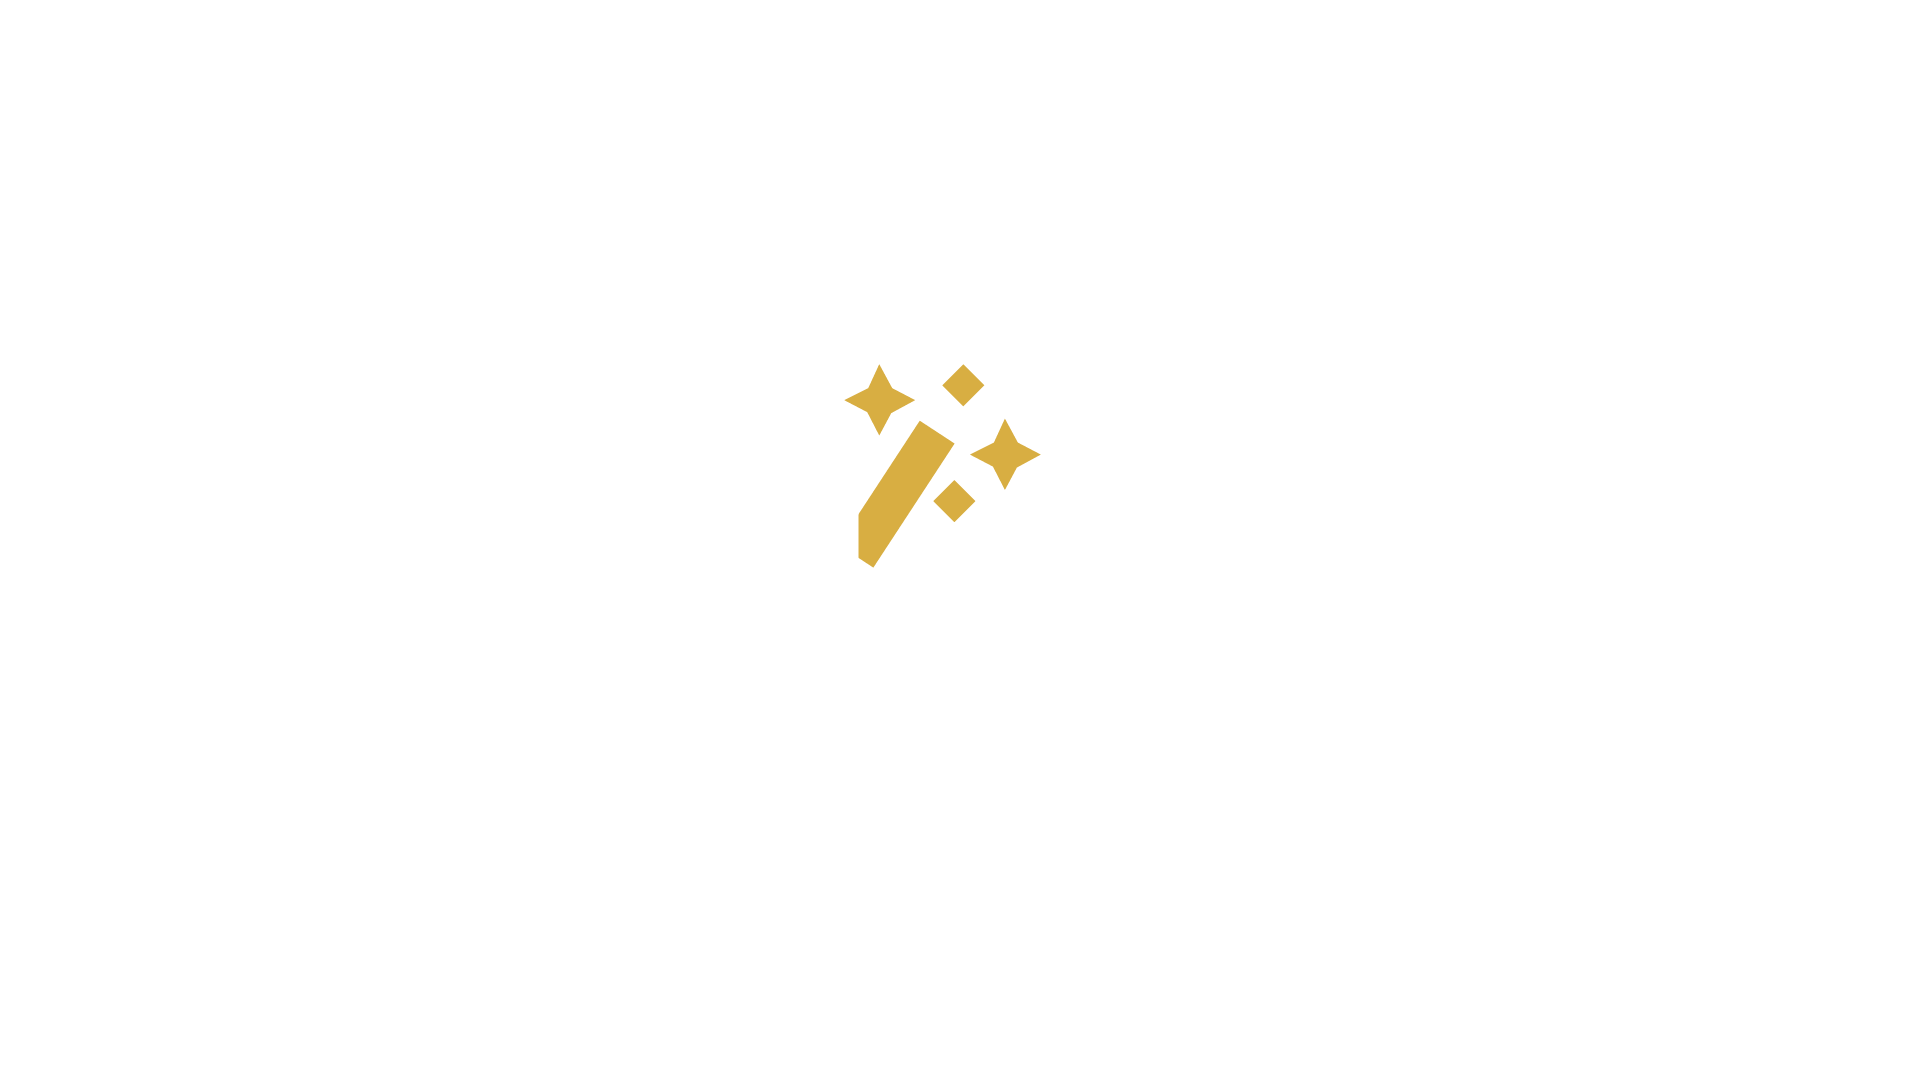 Magi Clinic